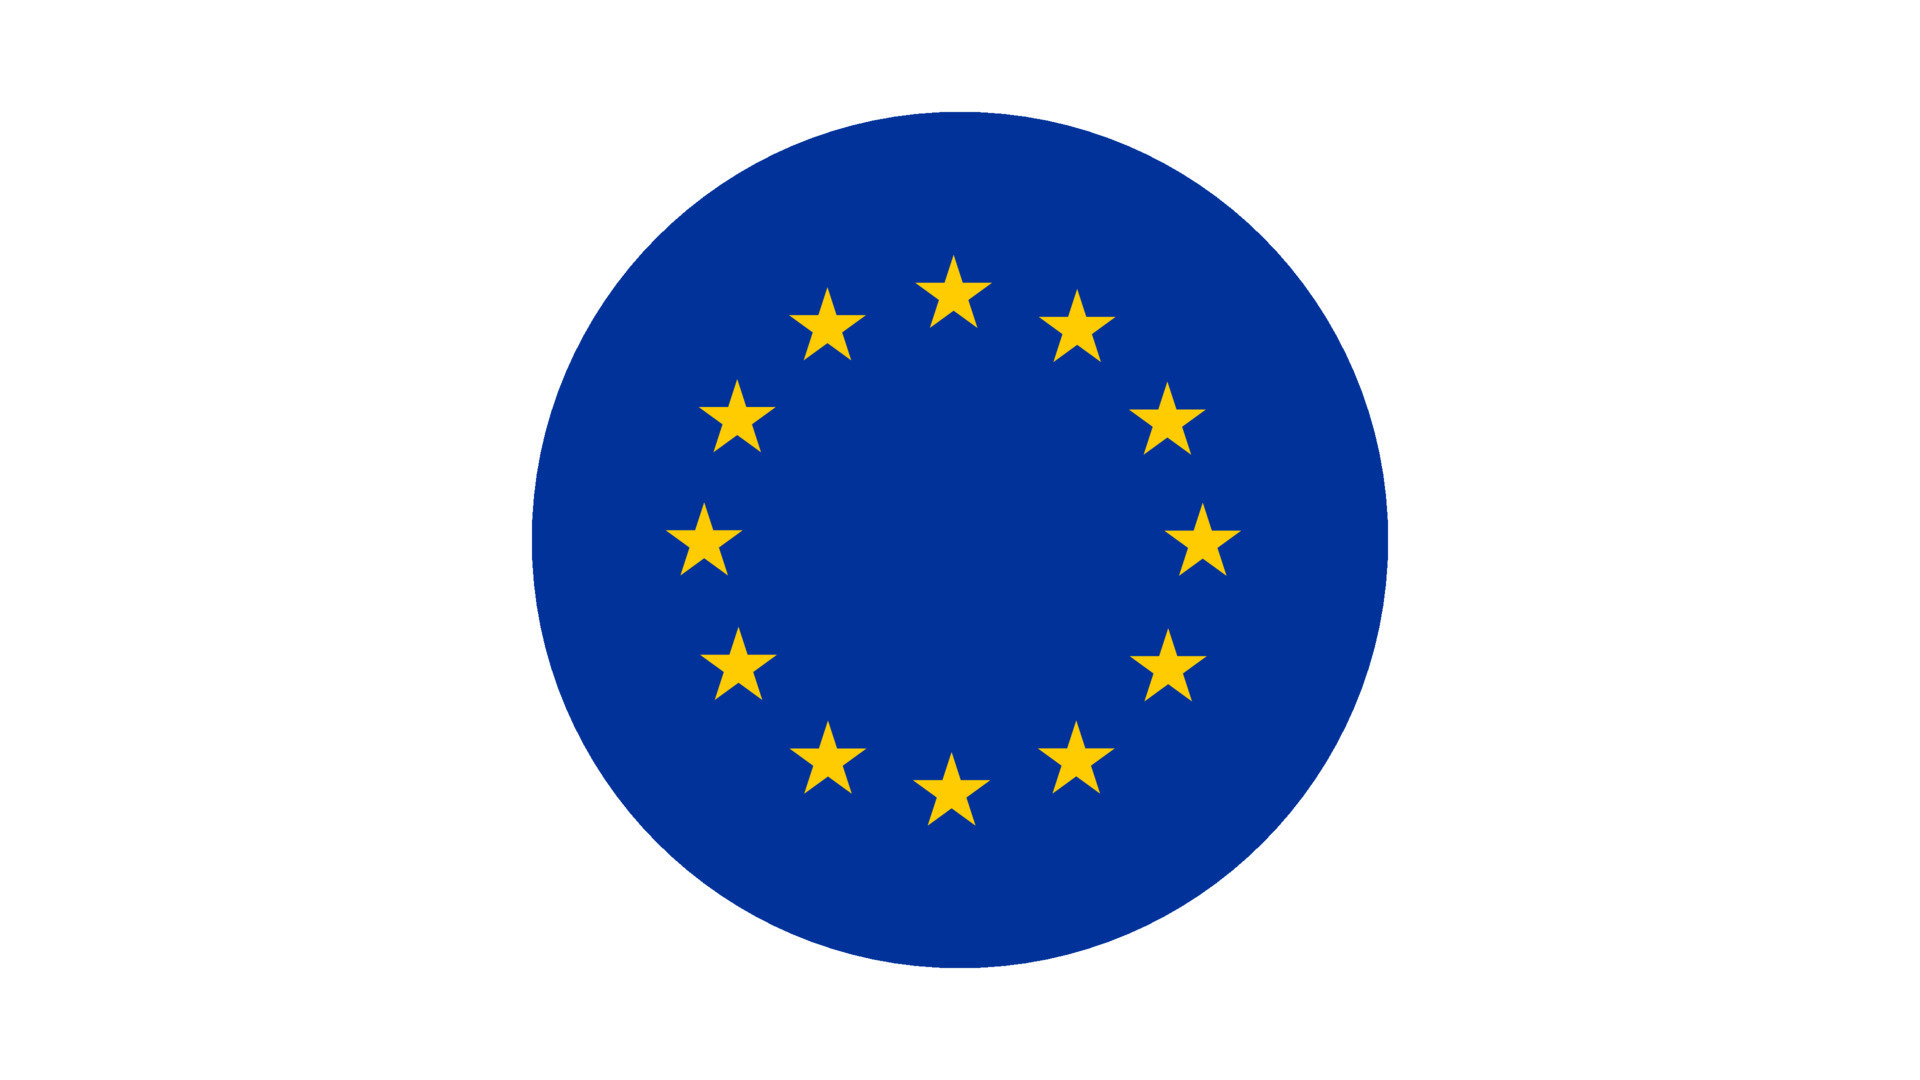 Cuántas estrellas tiene la bandera de la unión europea